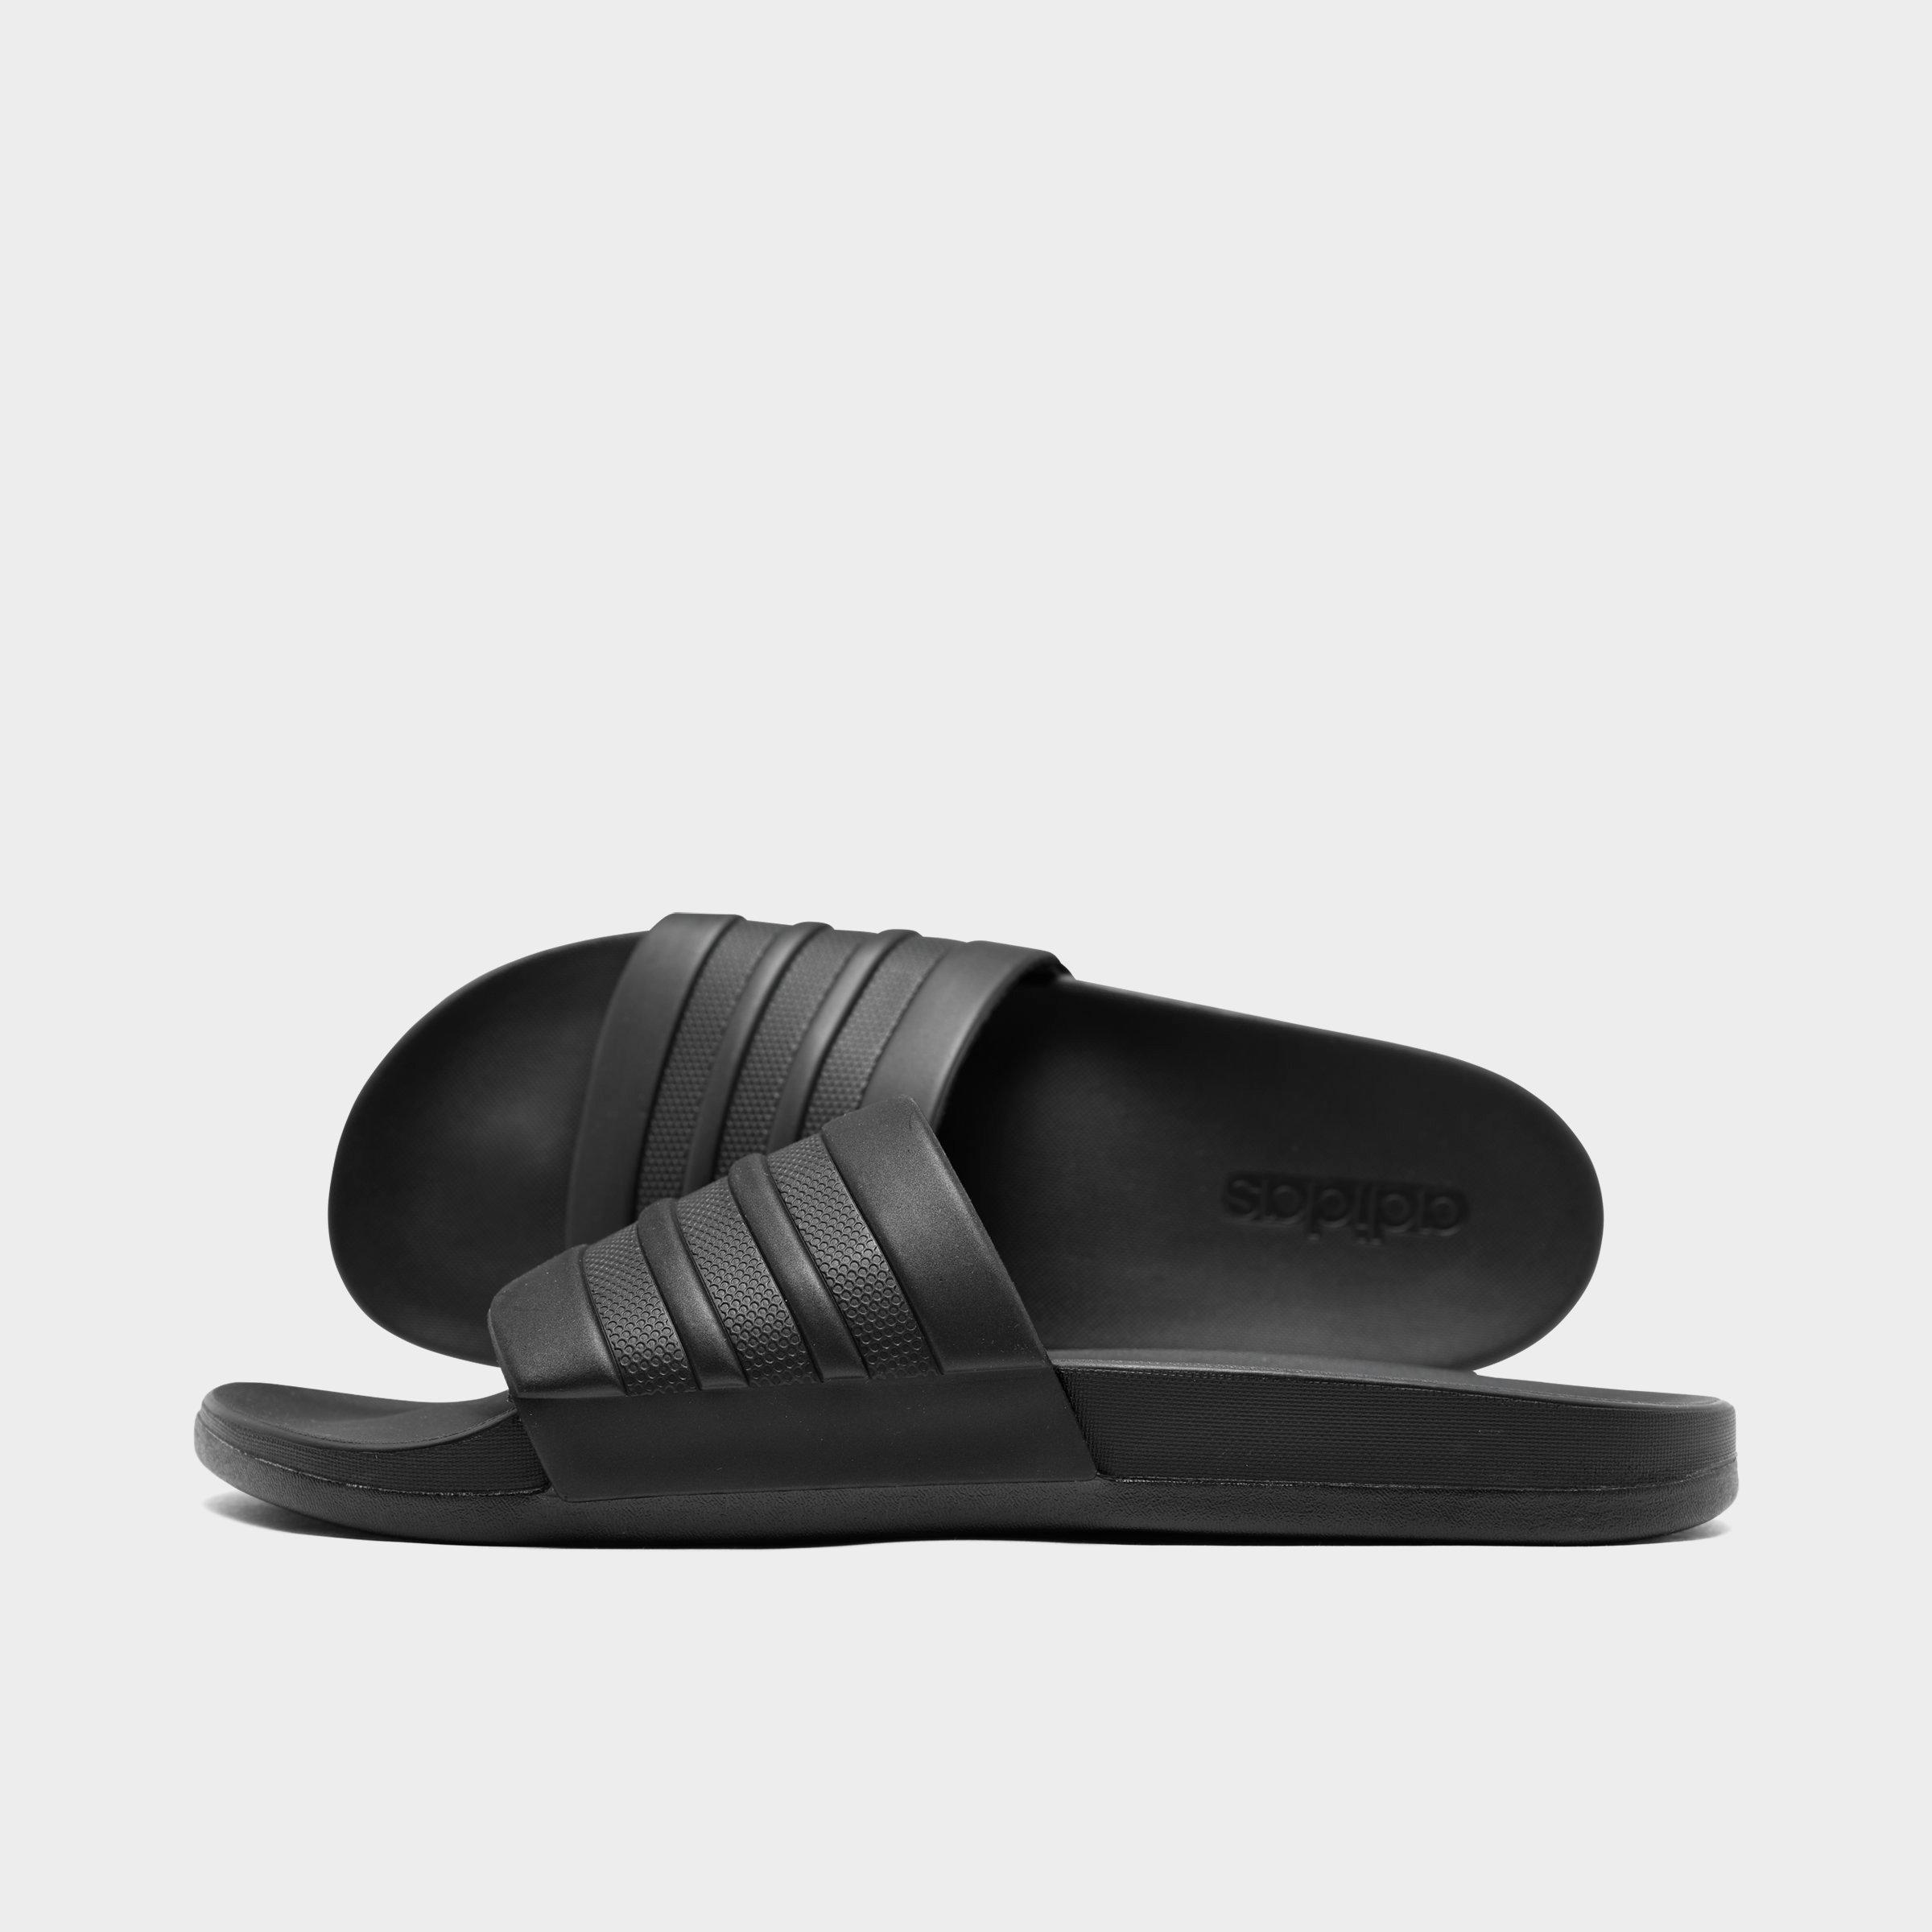 cloudfoam slippers online